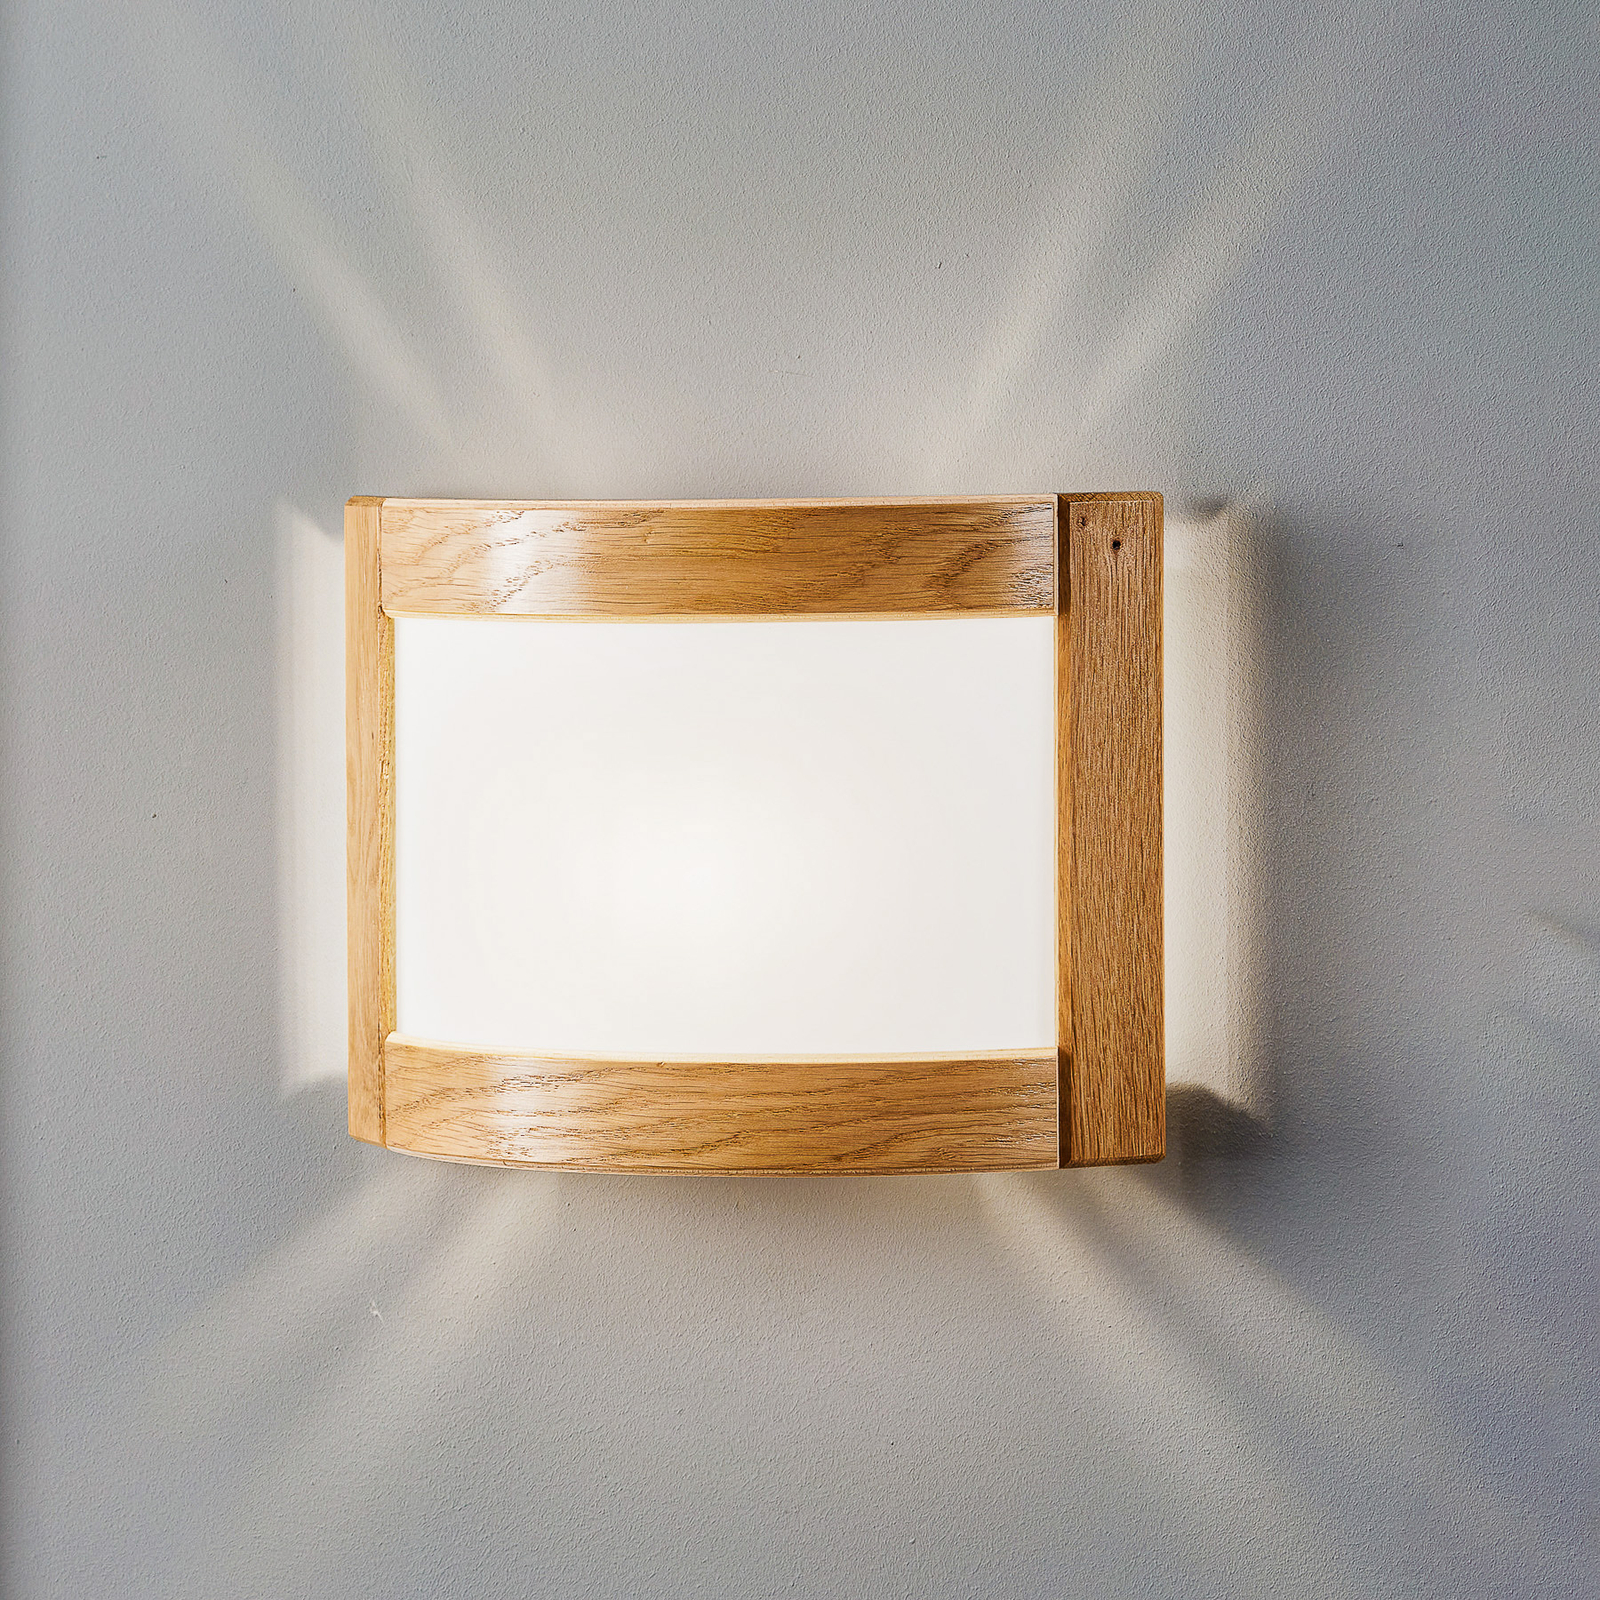 Zanna wall light made of wood, height 22 cm, light oak